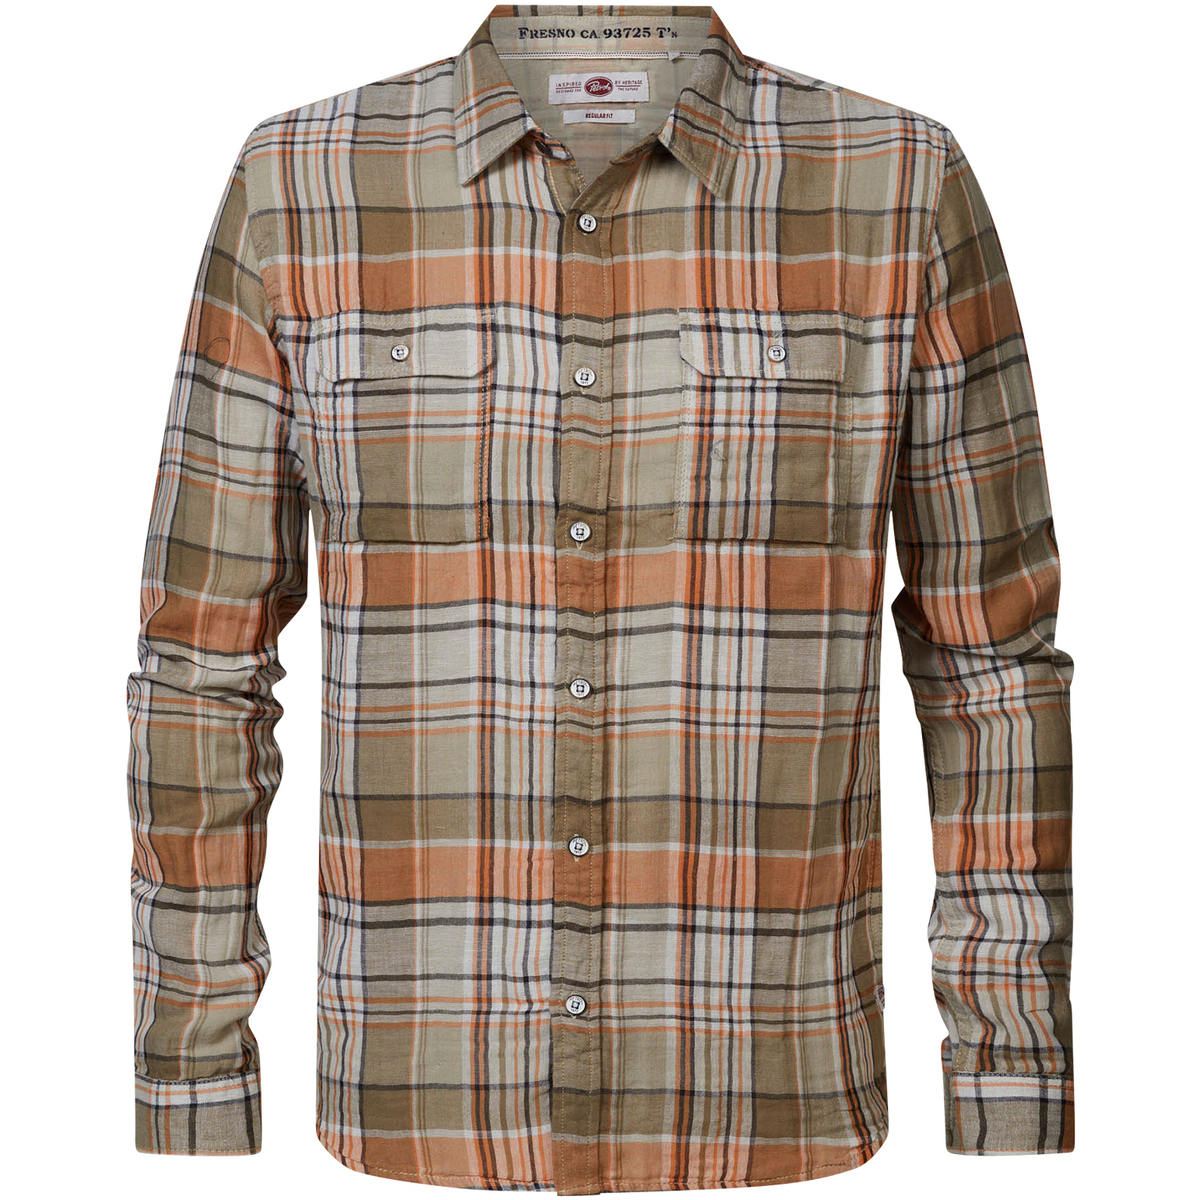 Vêtements Homme Connectez-vous pour ajouter un avis Chemise Regular Fit coton carreaux Multicolore